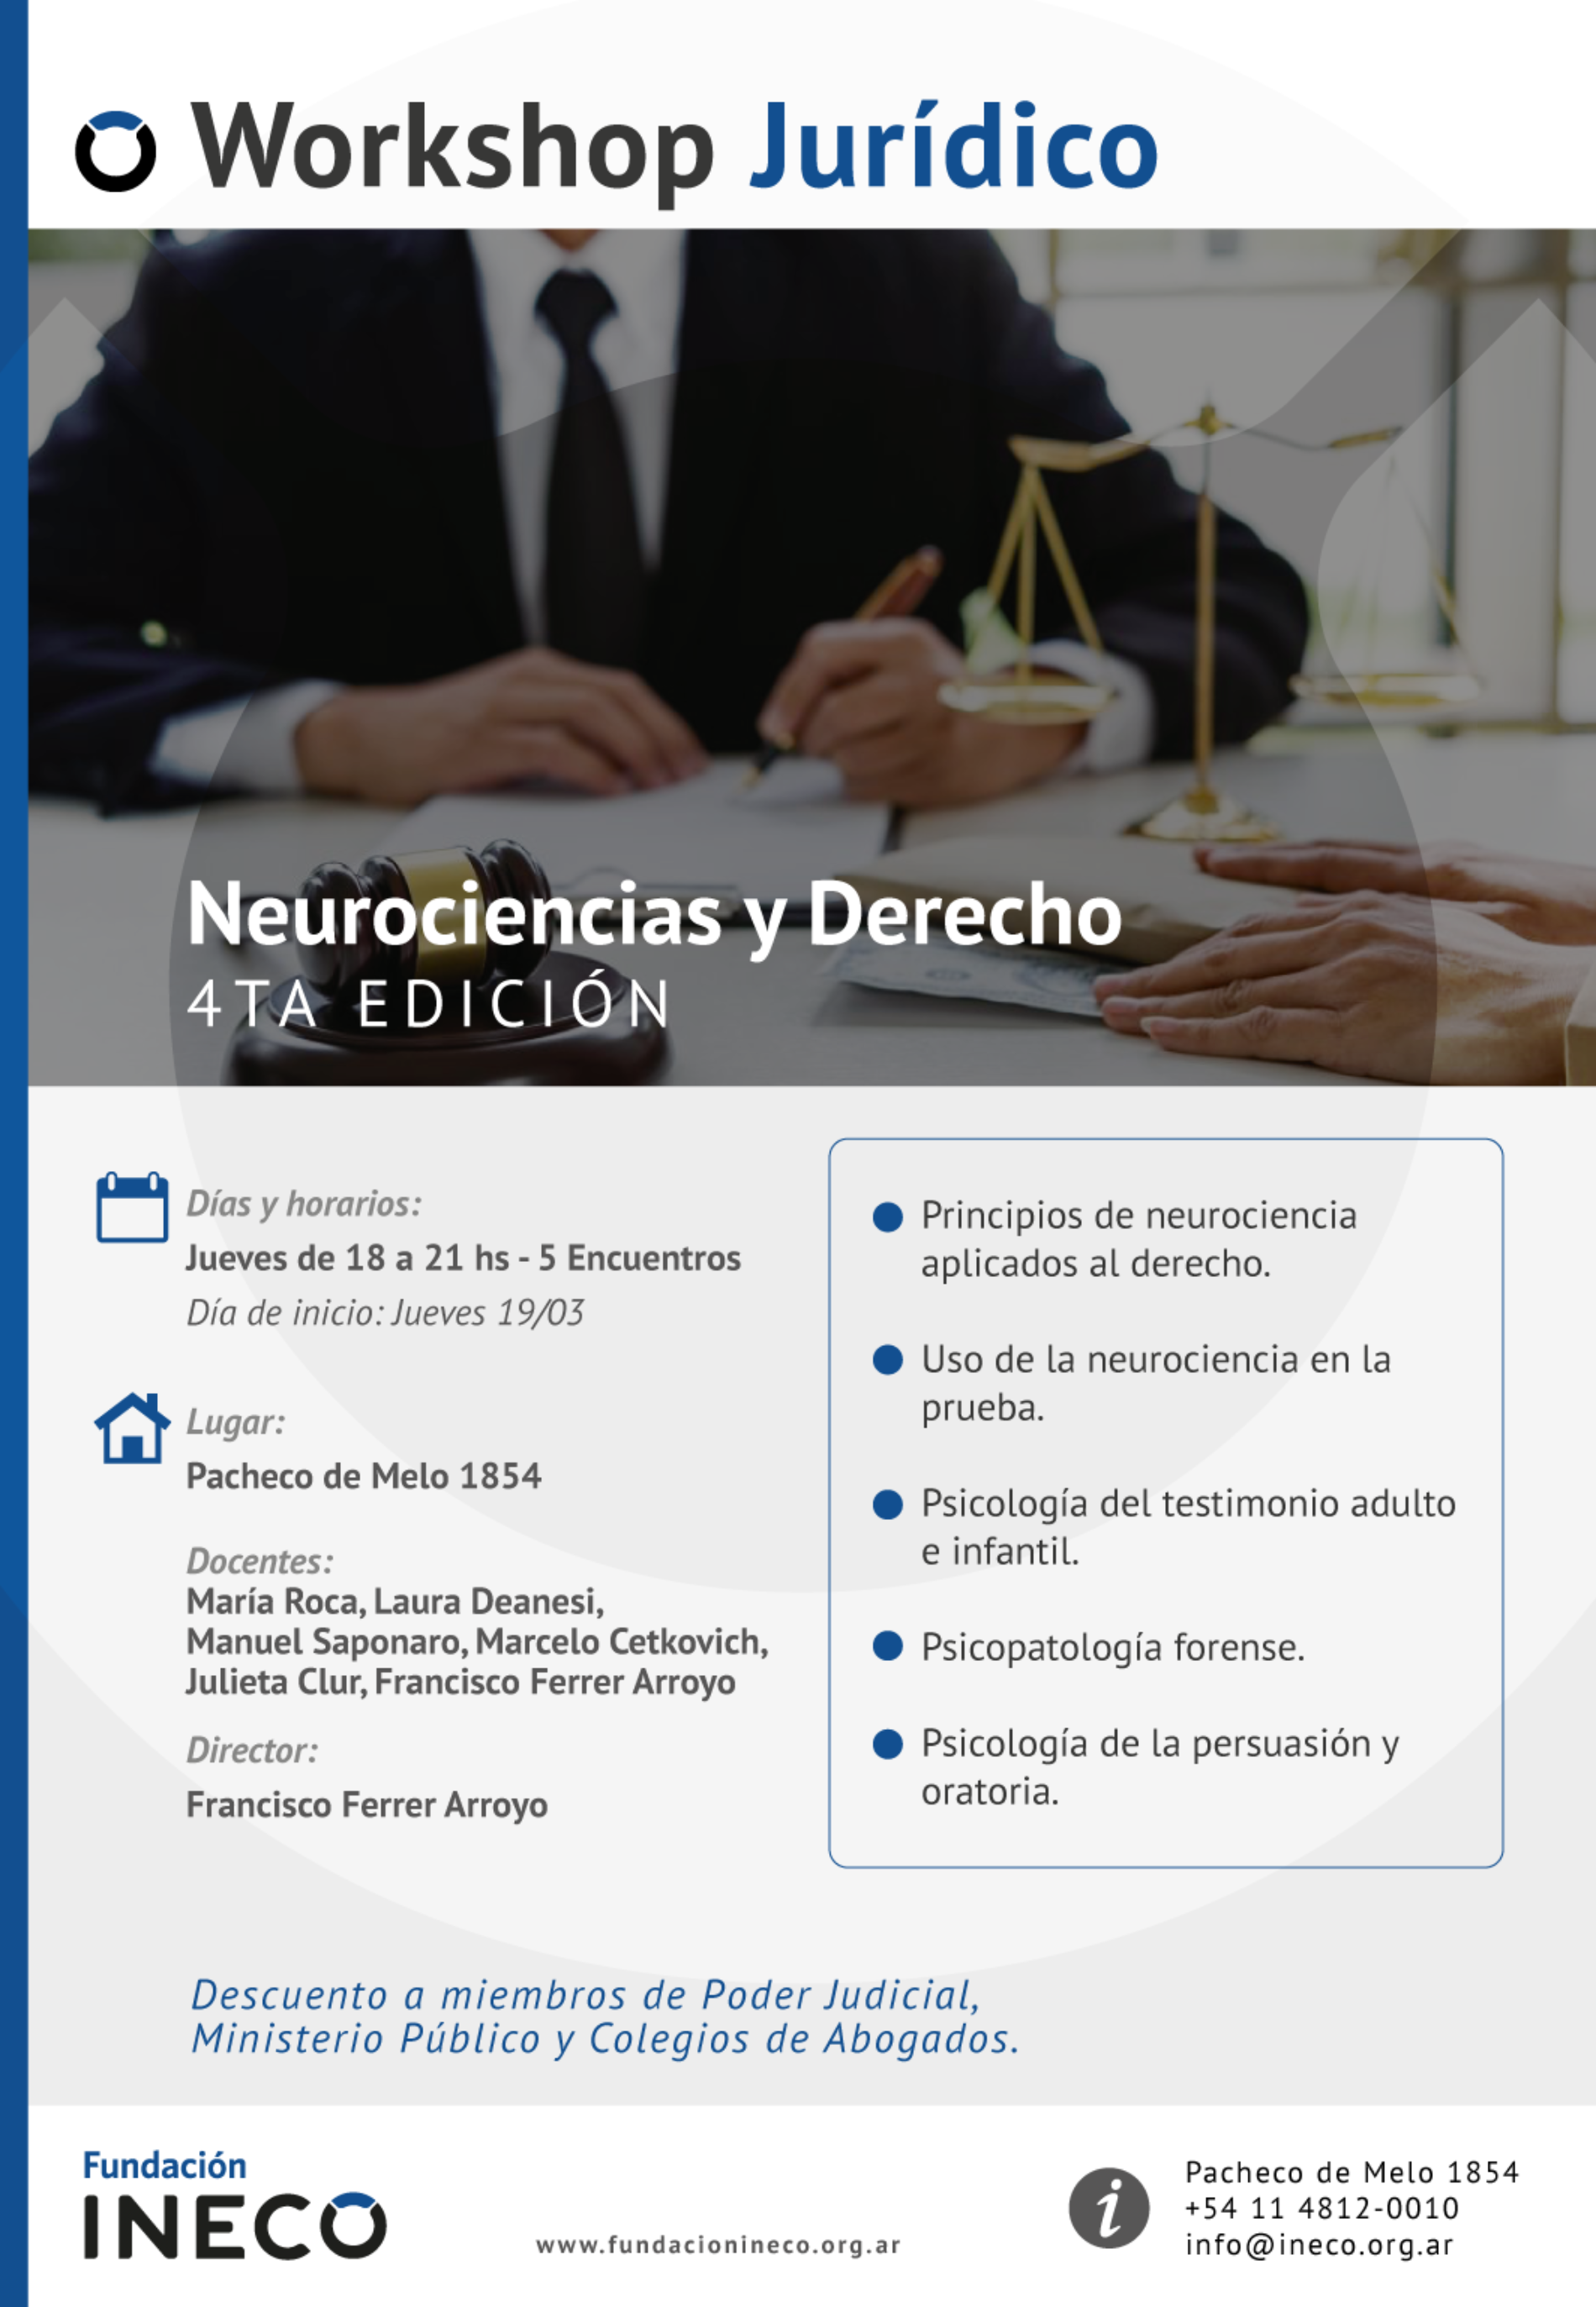 Workshop Jurídico «Neurociencias y Derecho»